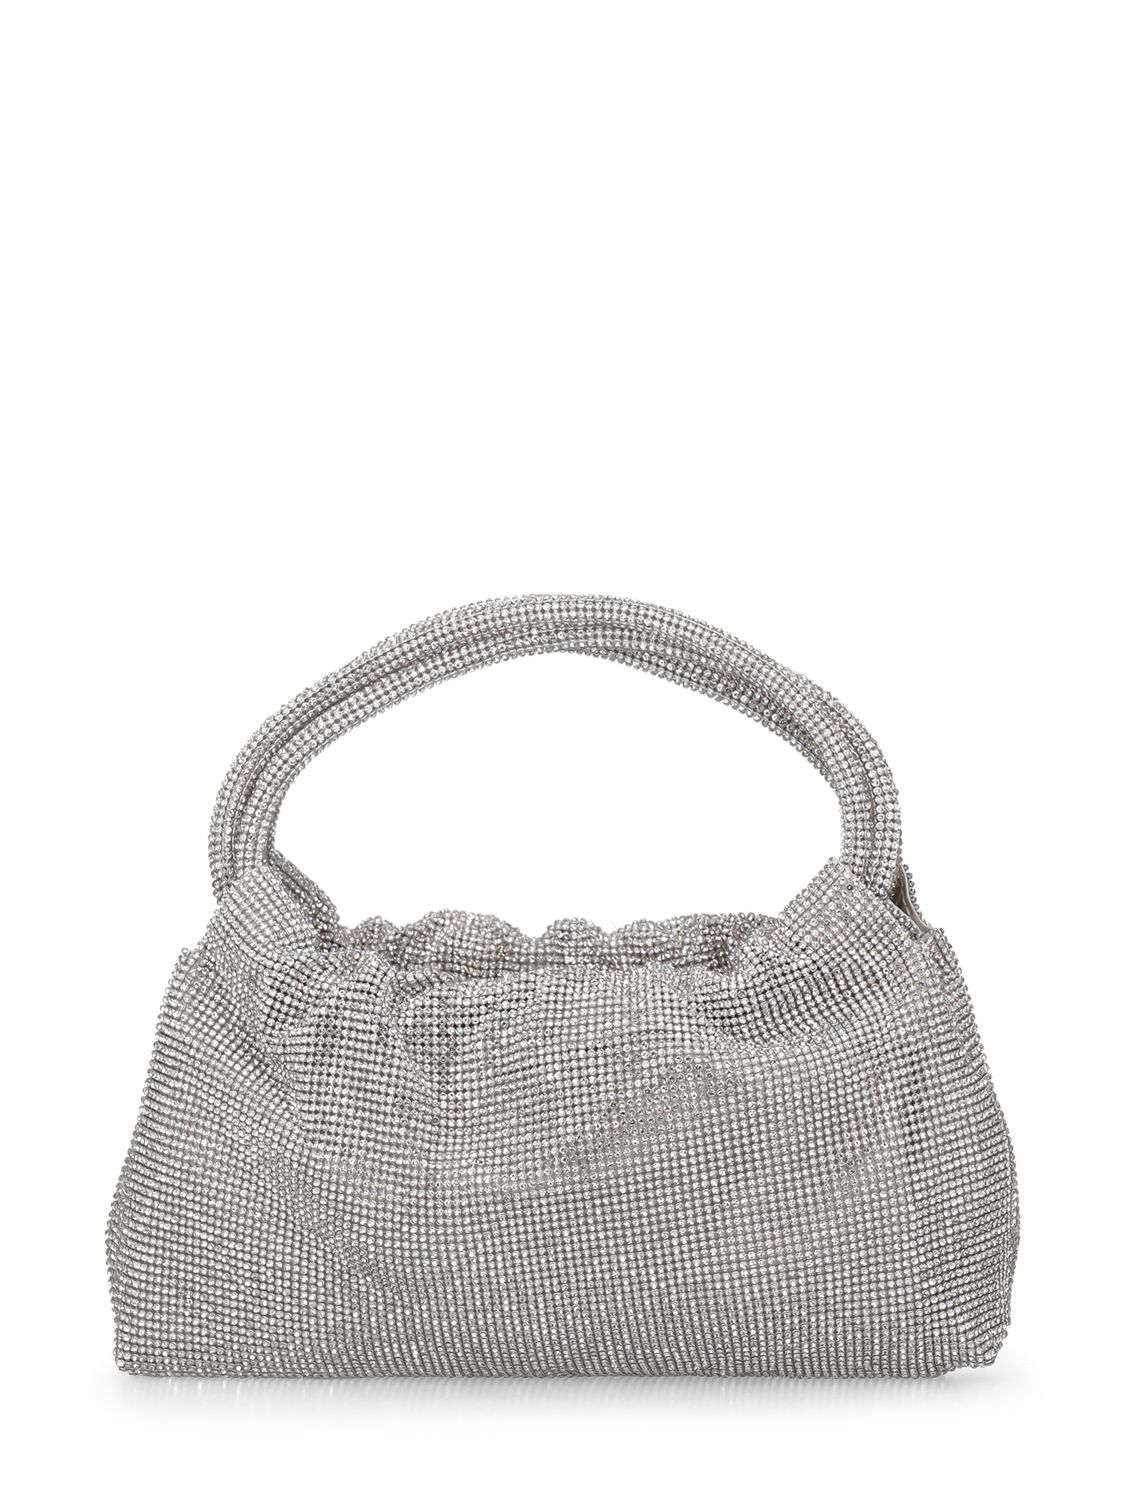 Ellerie Embellished Top Handle Bag